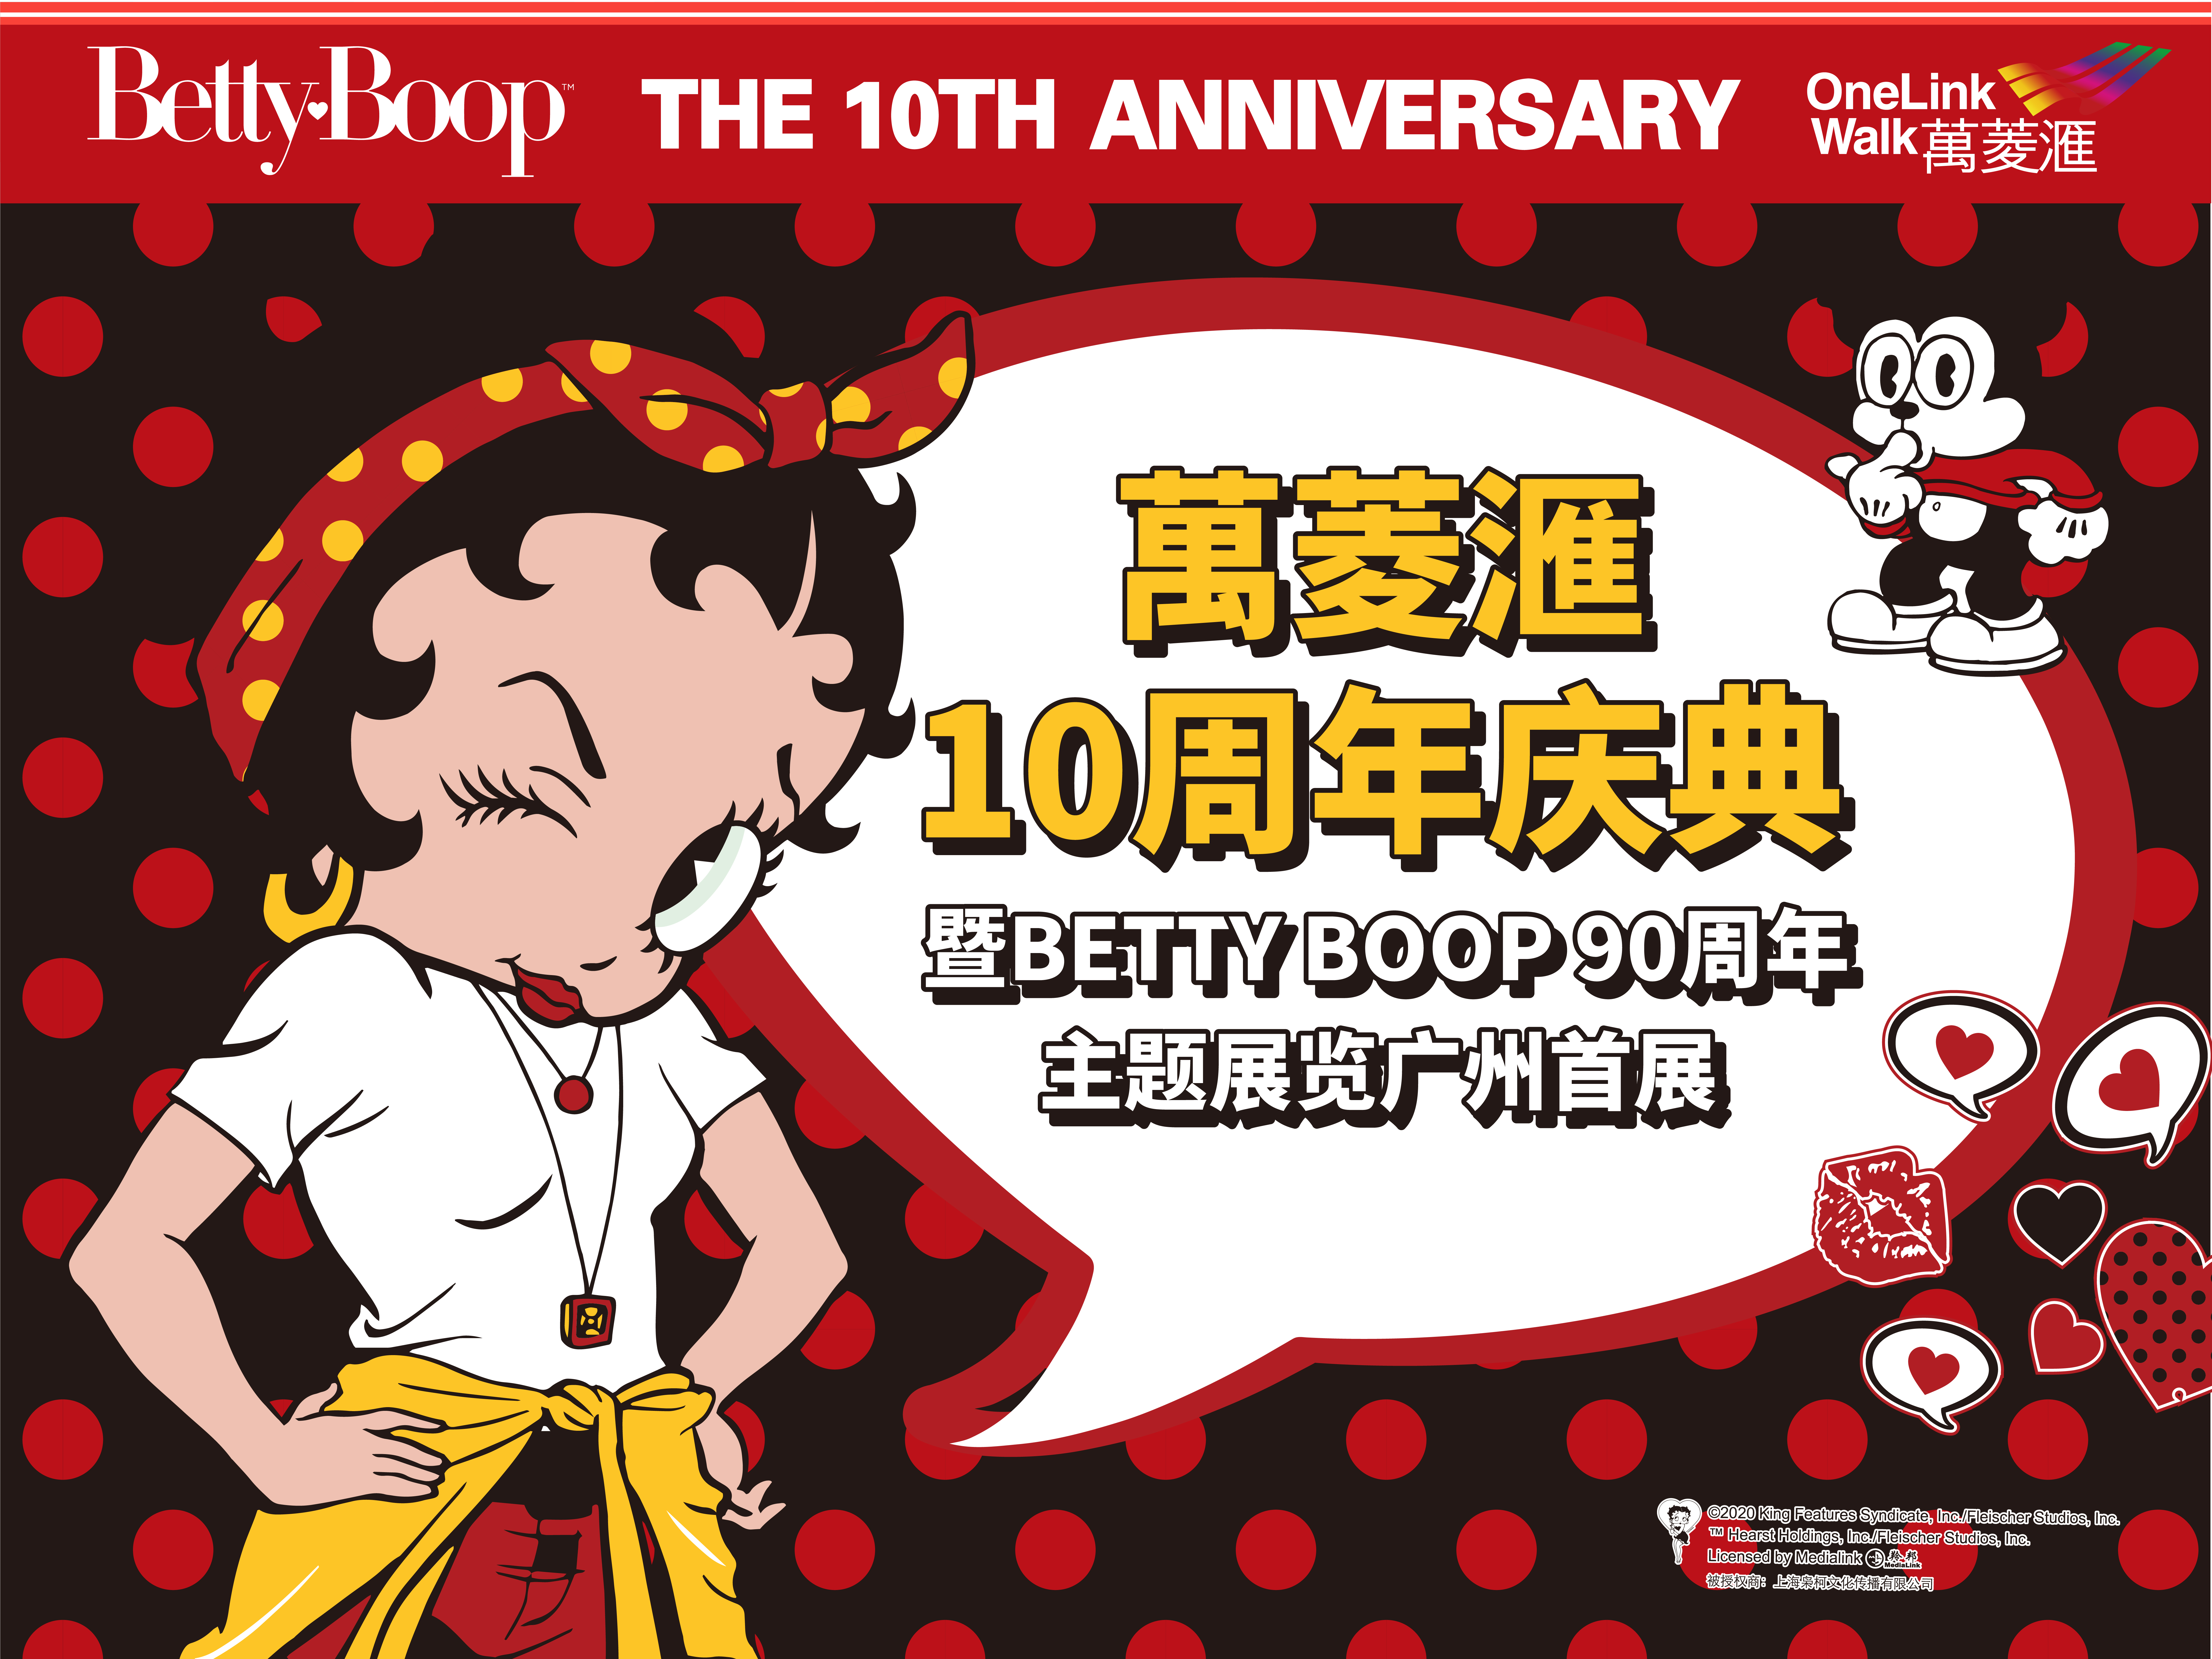 10周年「BettyBoop90周年」主题展览